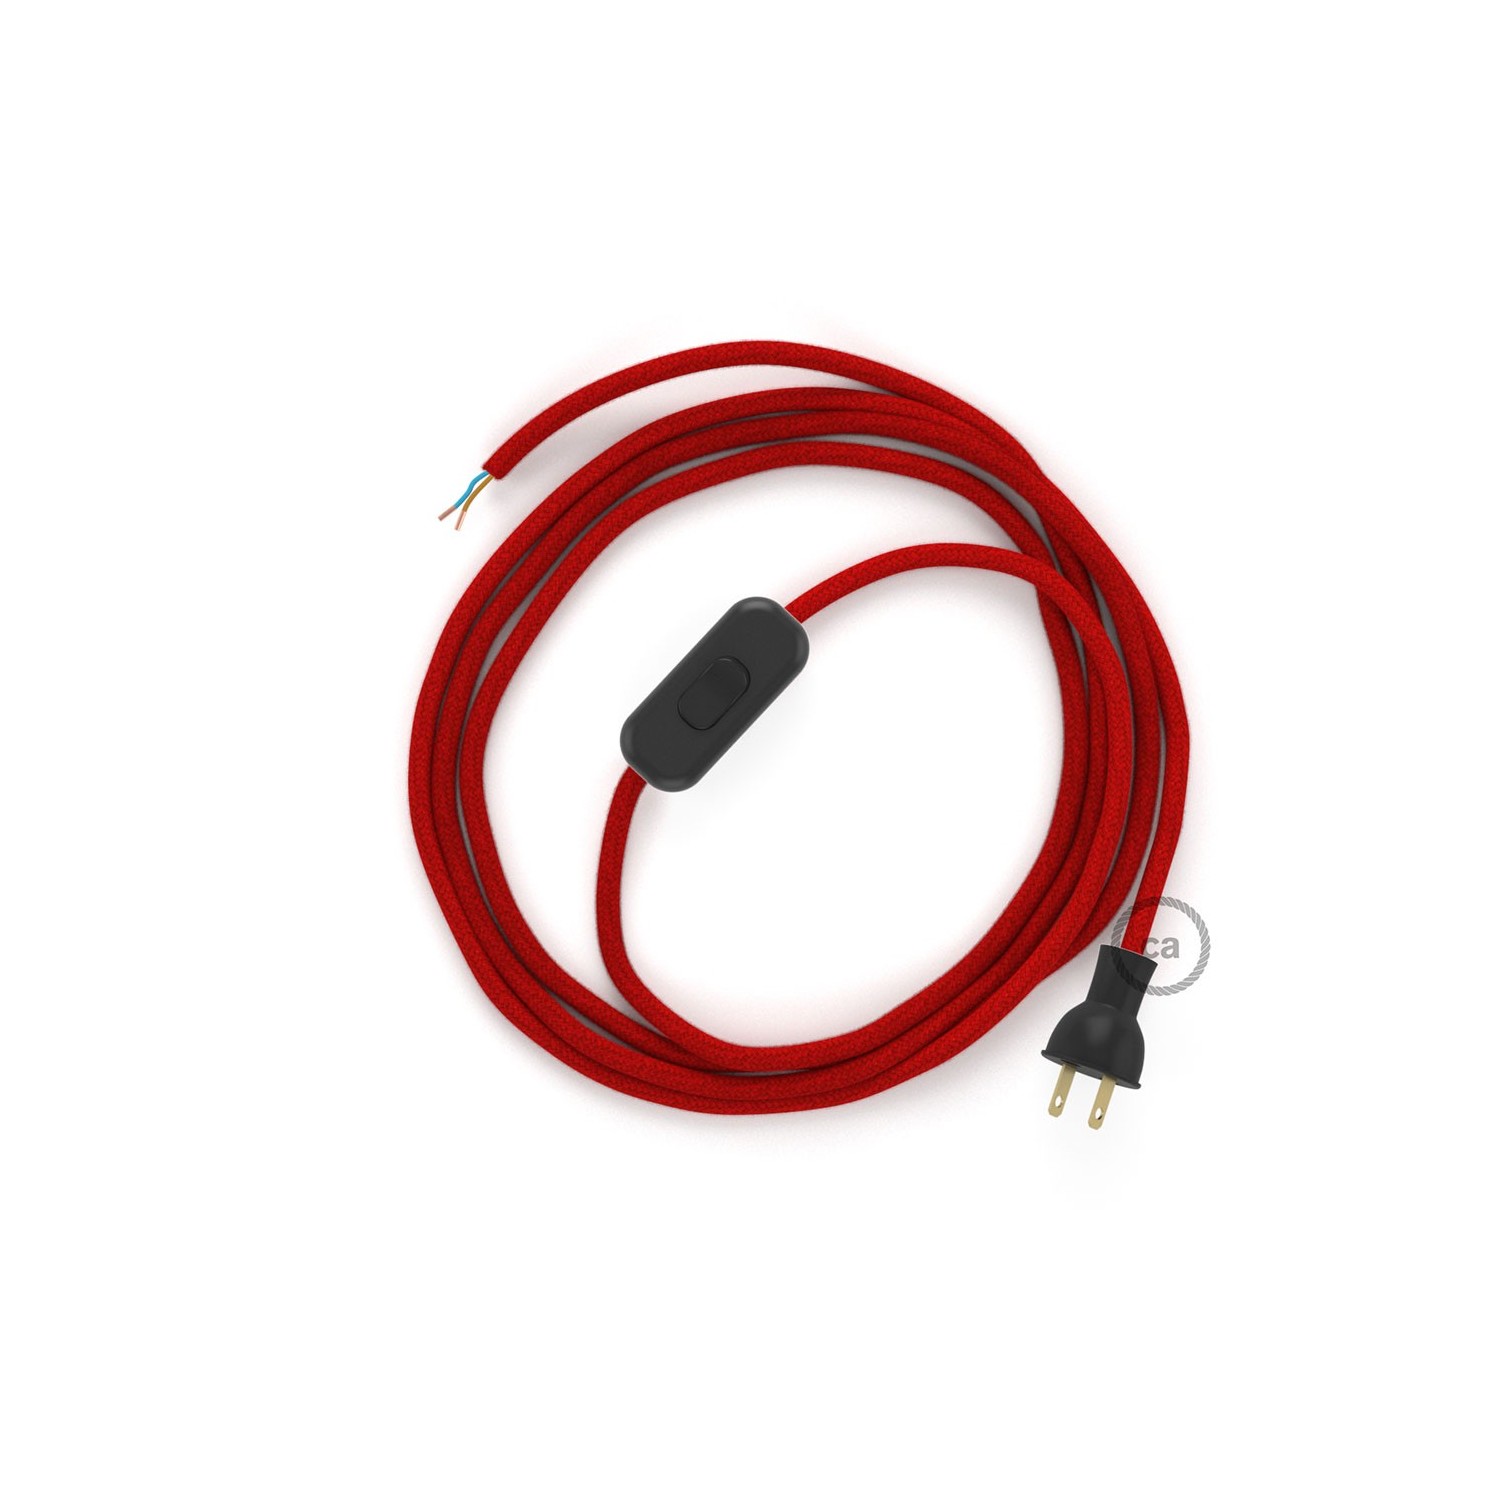 Cableado para lámpara de mesa, cable RC35 Algodón Rojo Fuego 1,8 m. Elige el color de la clavija y del interruptor!